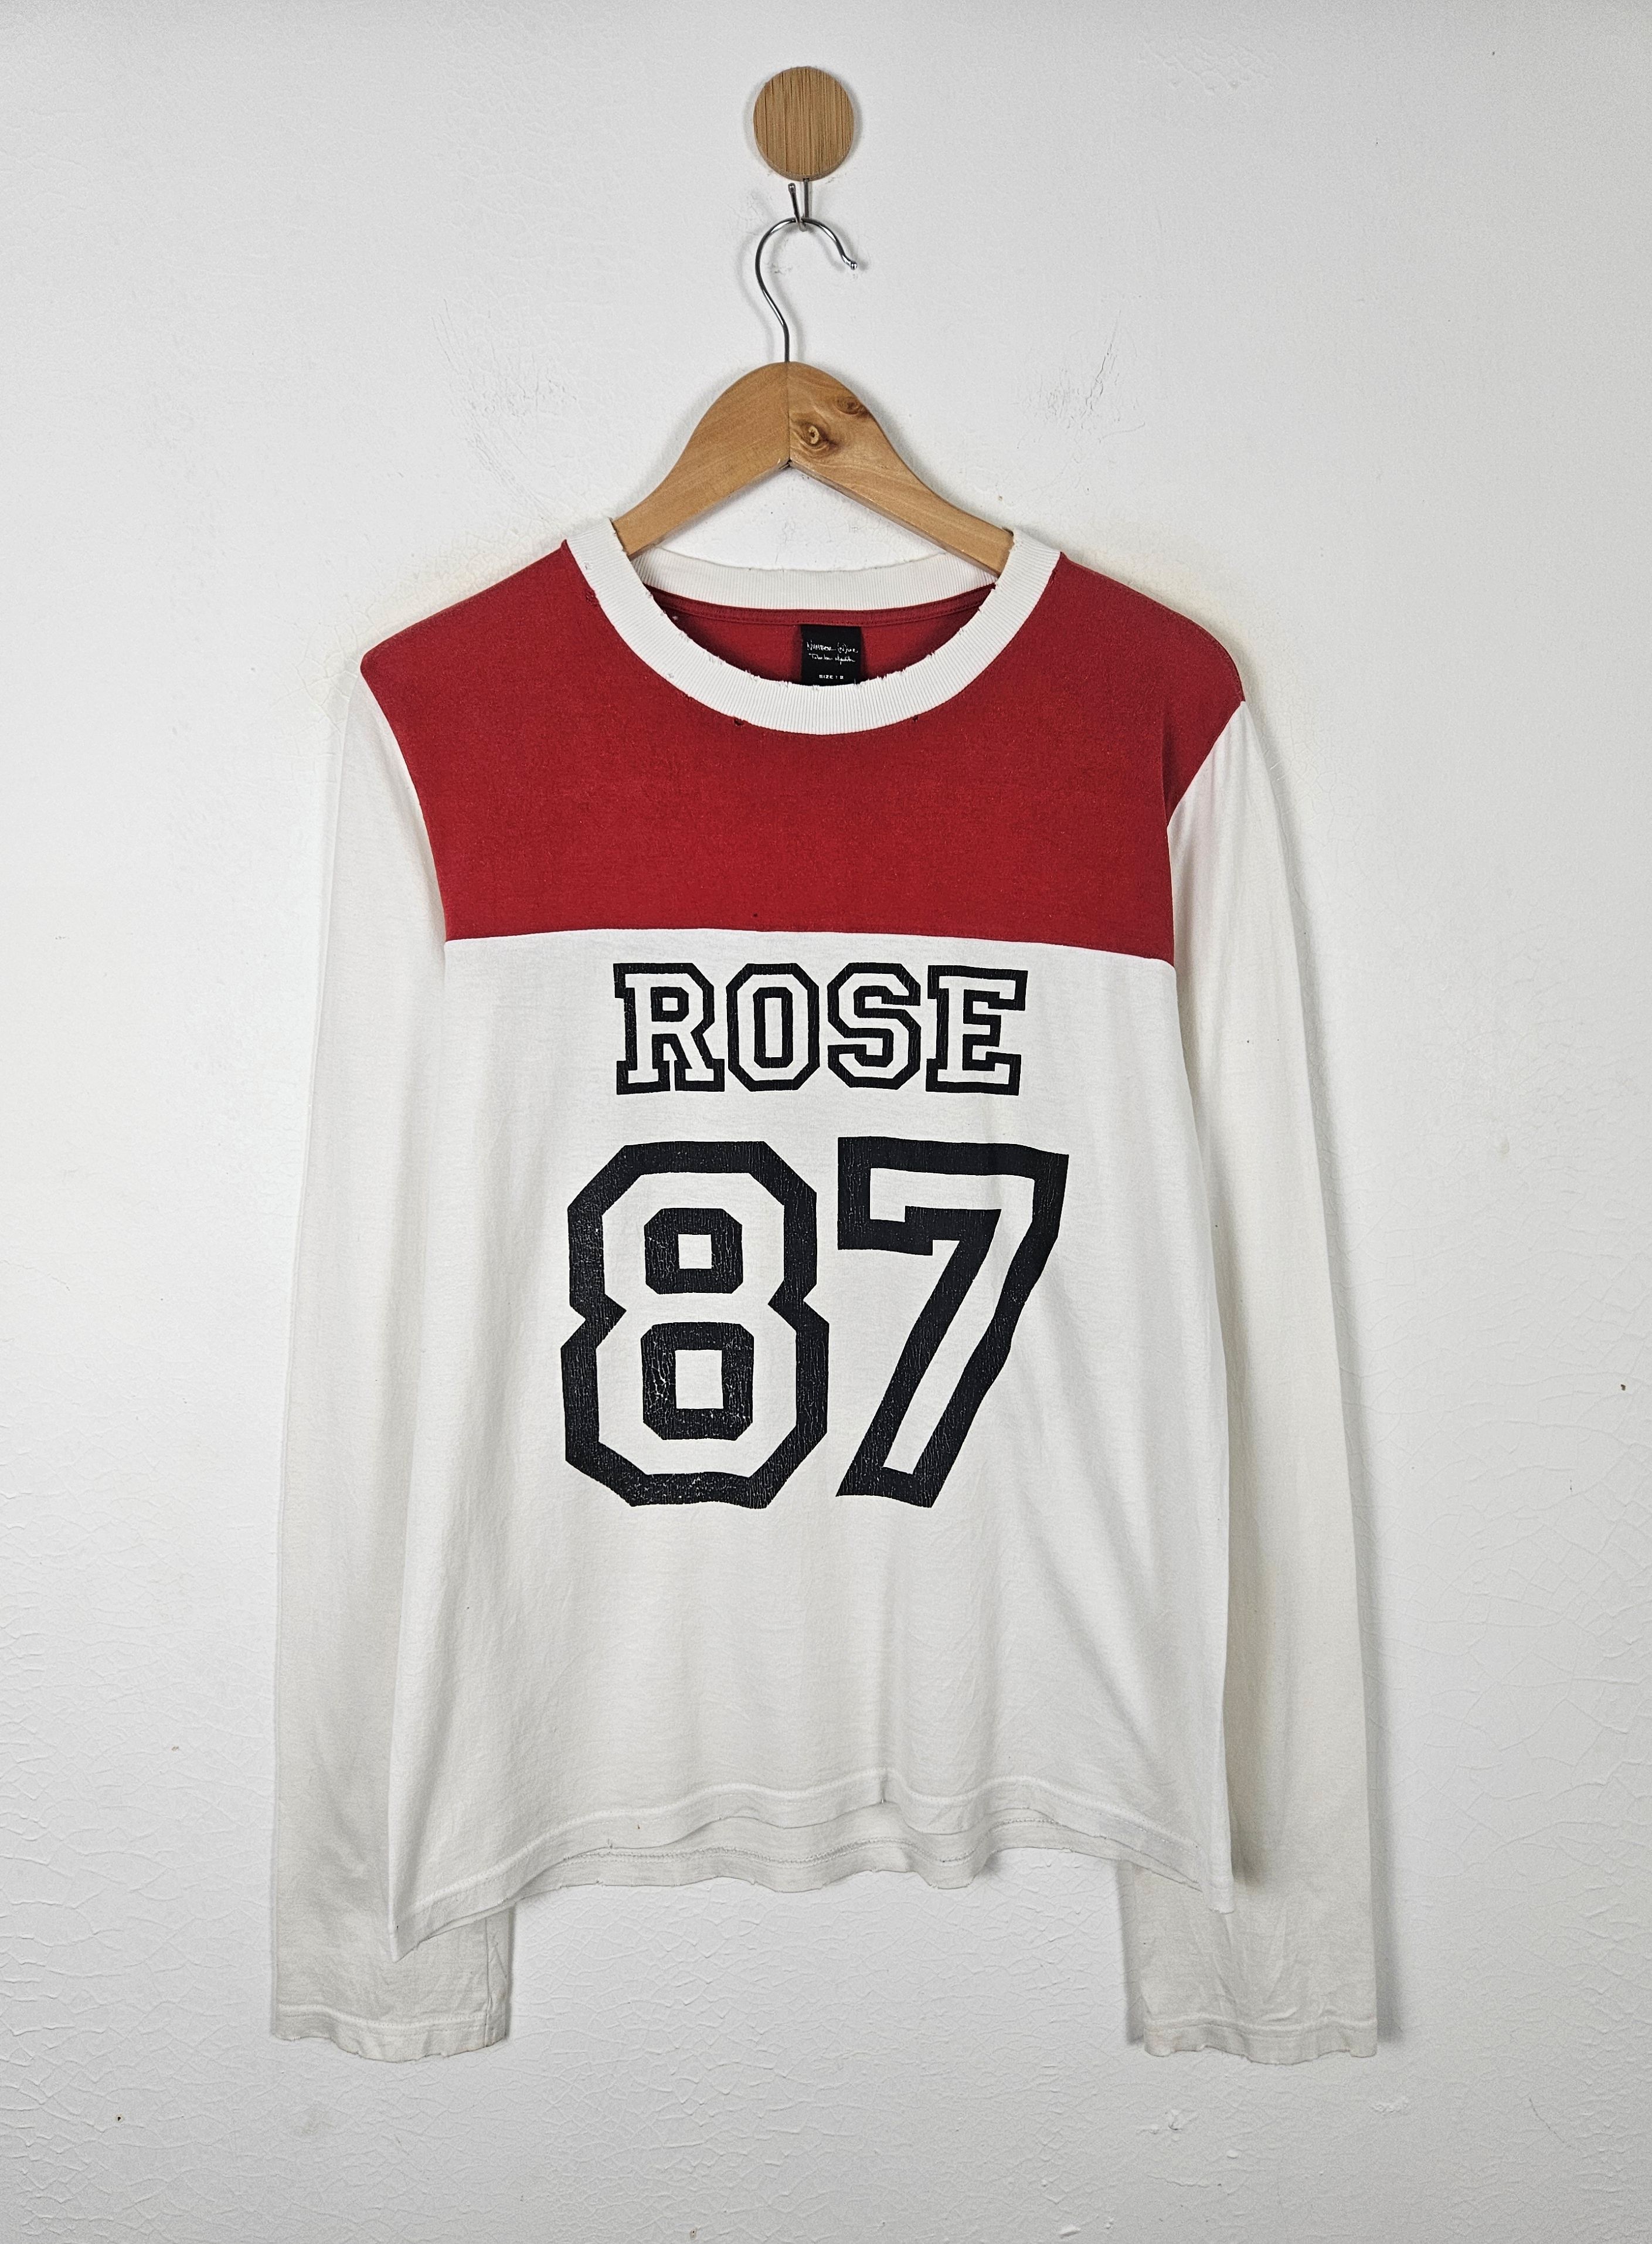 Number Nine Rose 87 shirt - 1